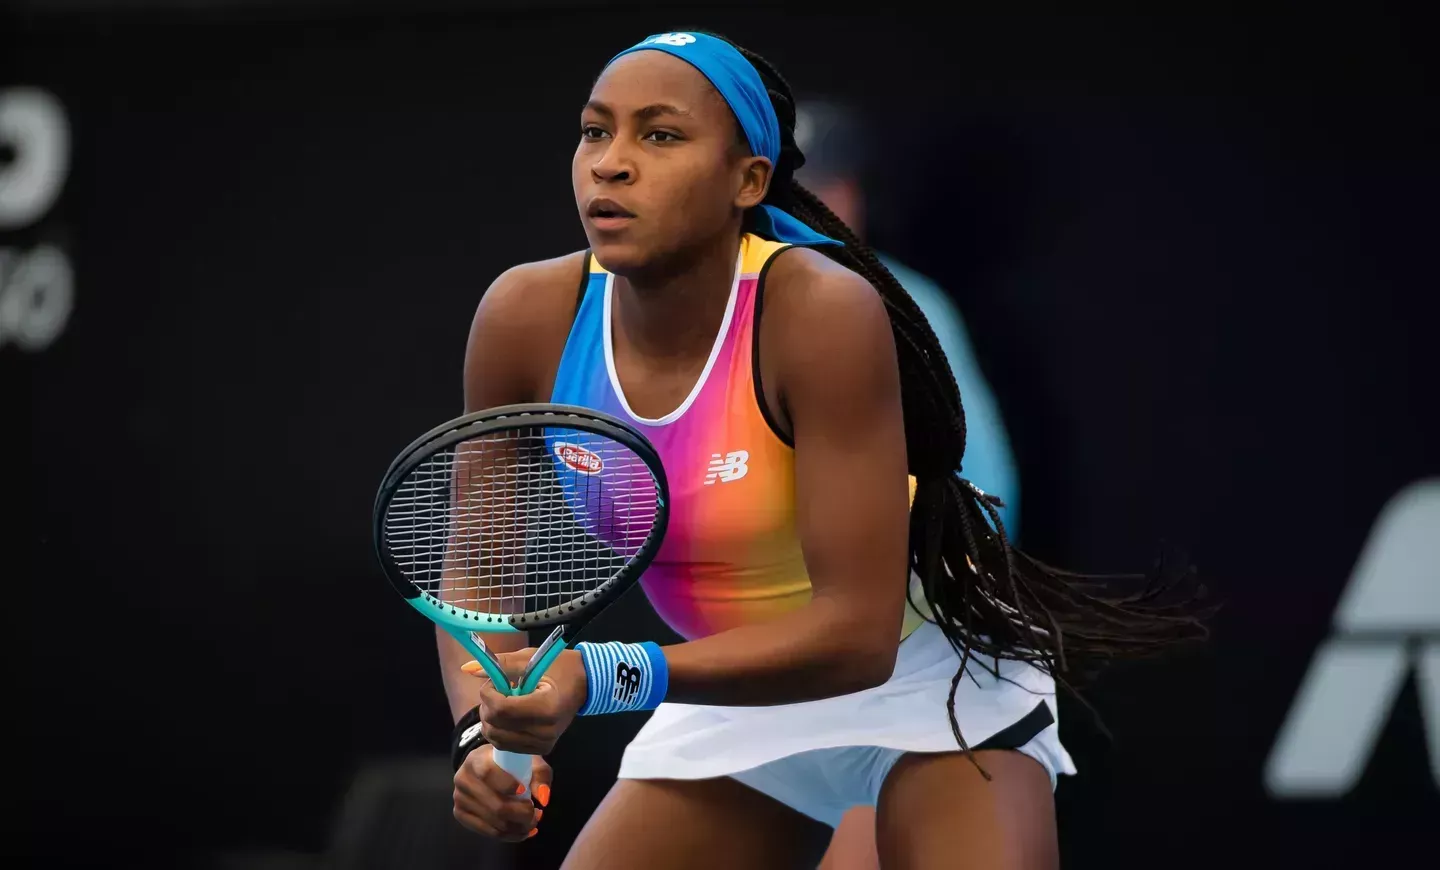 La estrella del tenis Coco Gauff ataca la ley de Florida que margina a las personas LGBTQ+